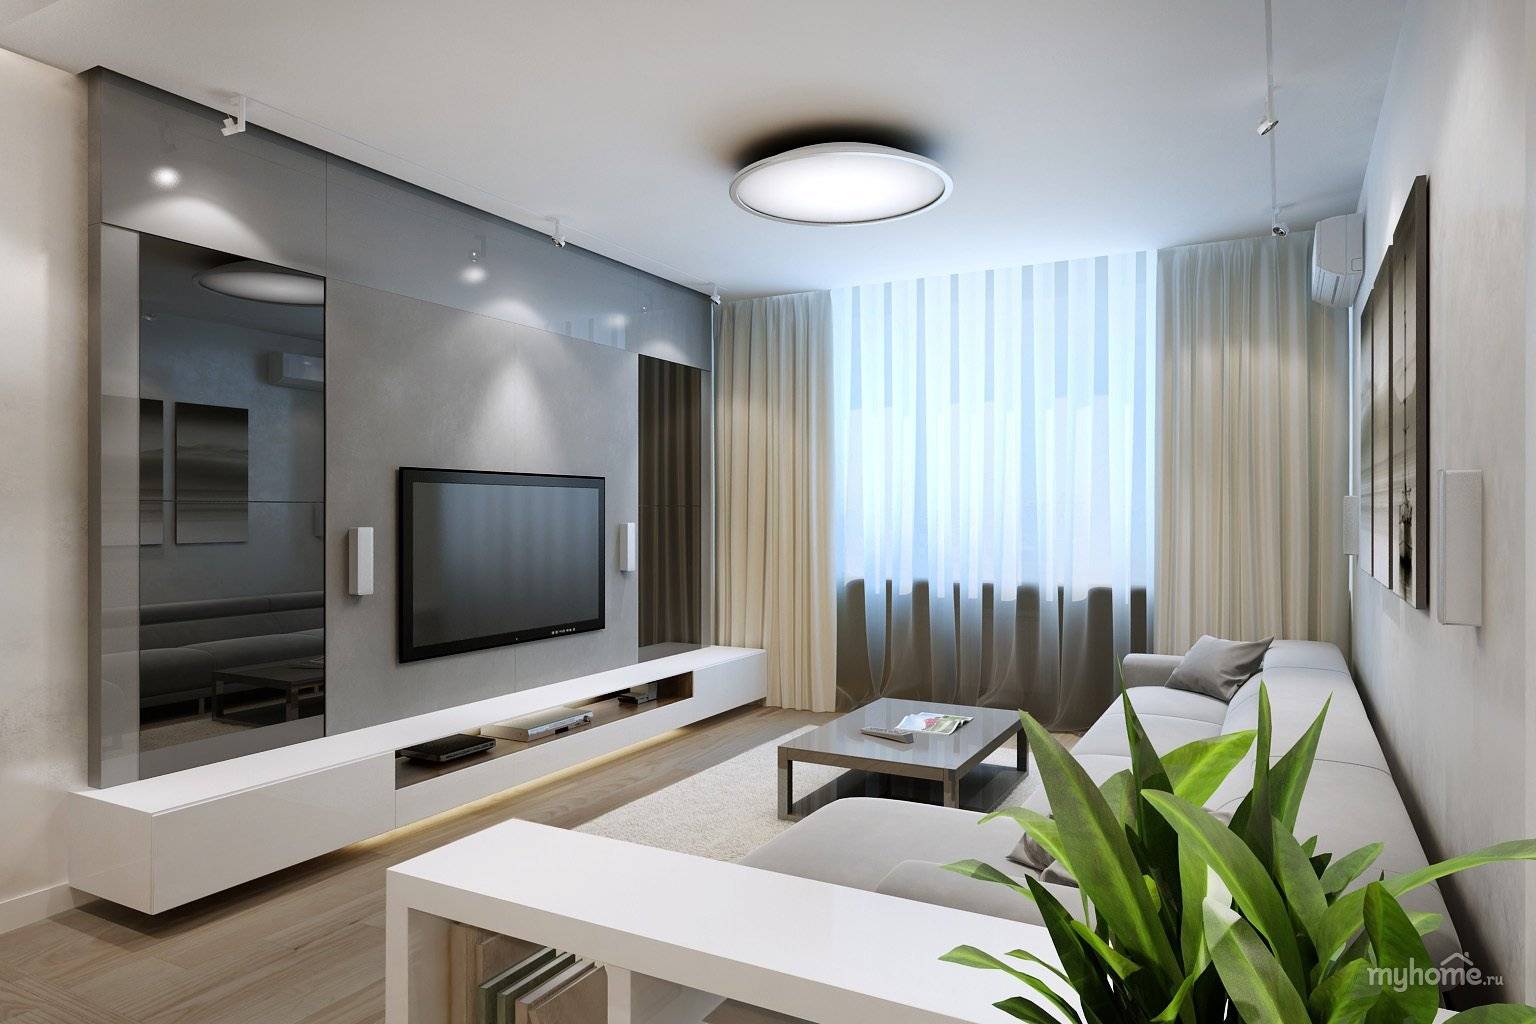 Гостиная 20 кв. м. — реальные примеры оформления и идеи создания красивого дизайна интерьера гостиной (160 фото)